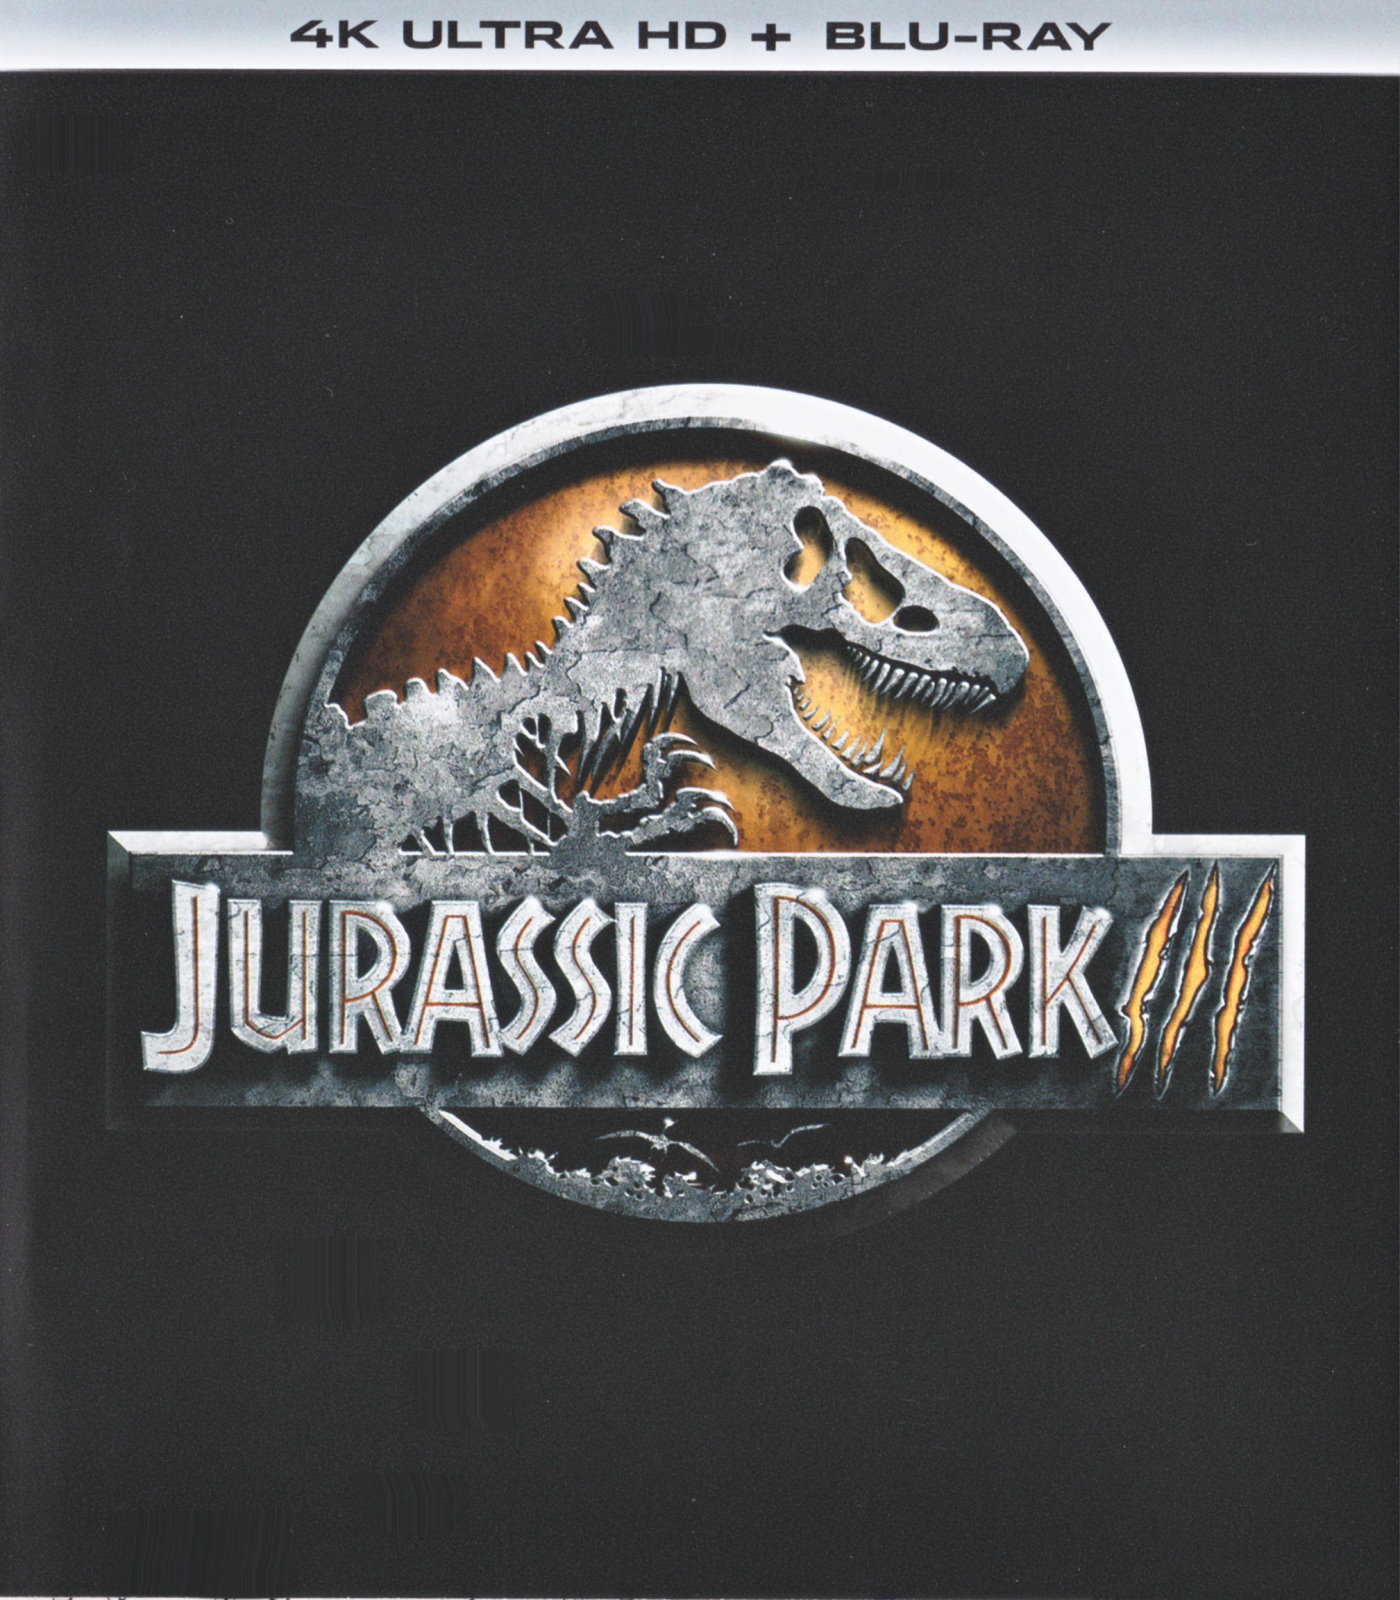 Cover - Jurassic Park III.jpg